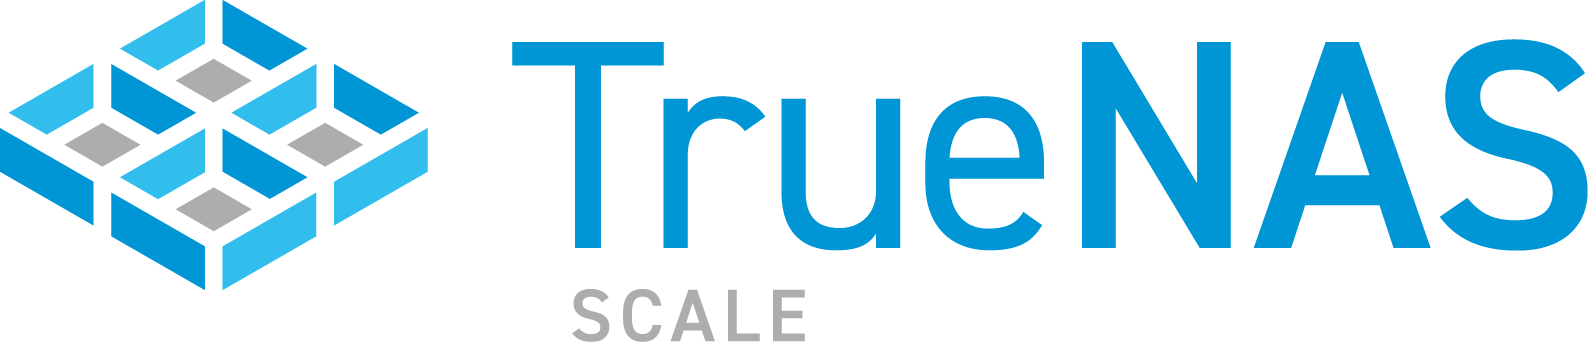 TrueNAS SCALE Logo